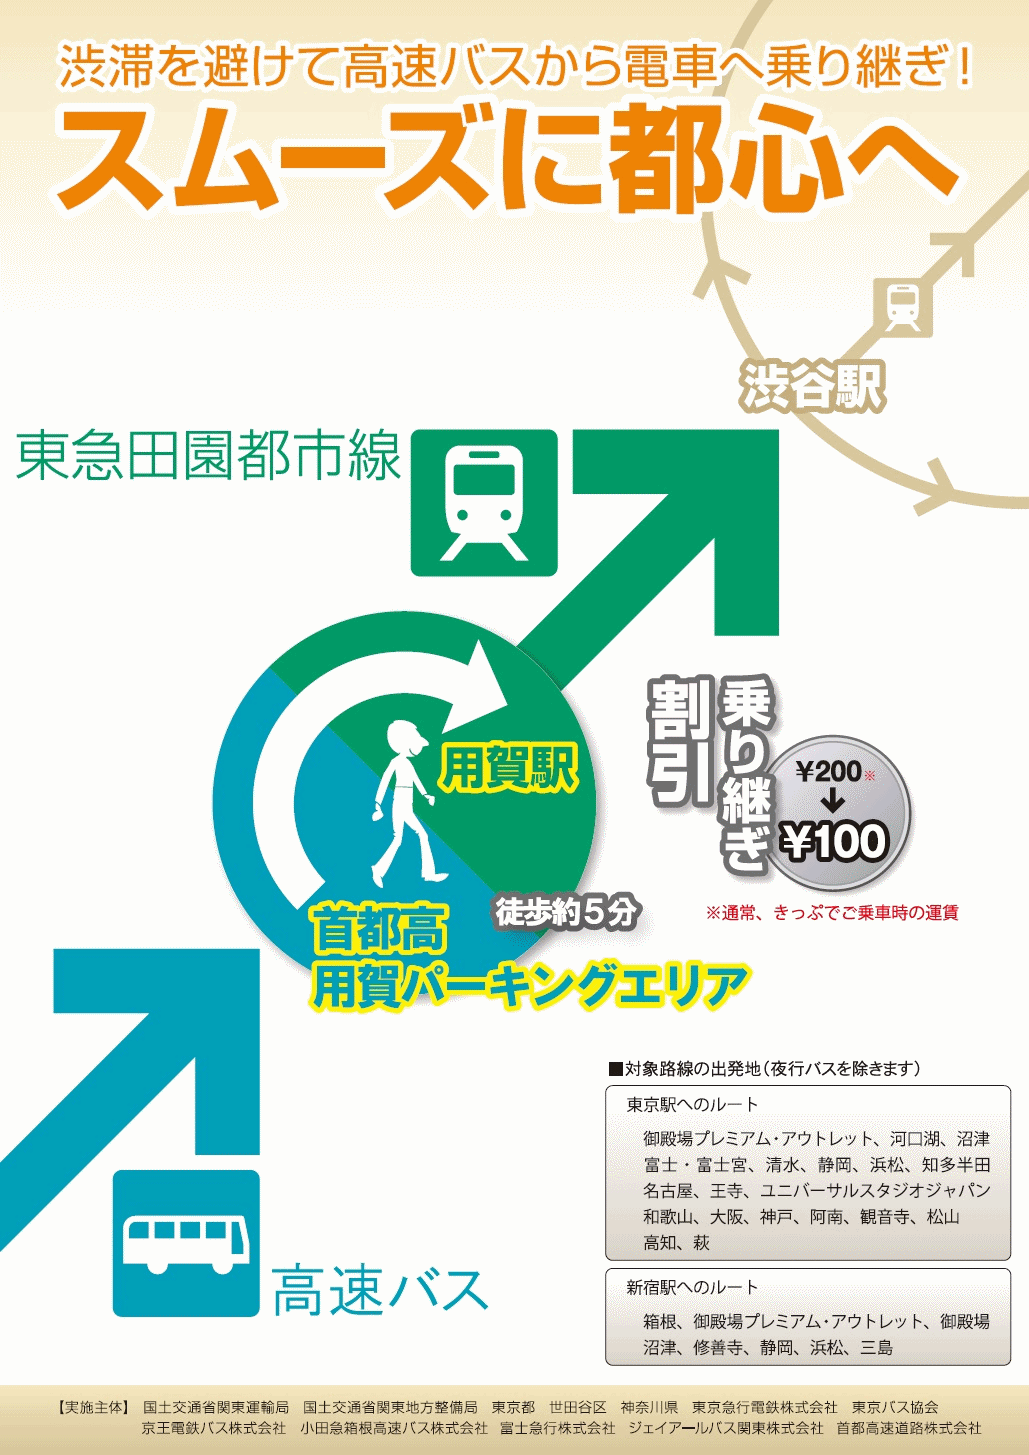 高速バスから東急田園都市線への乗り継ぎパンフレット